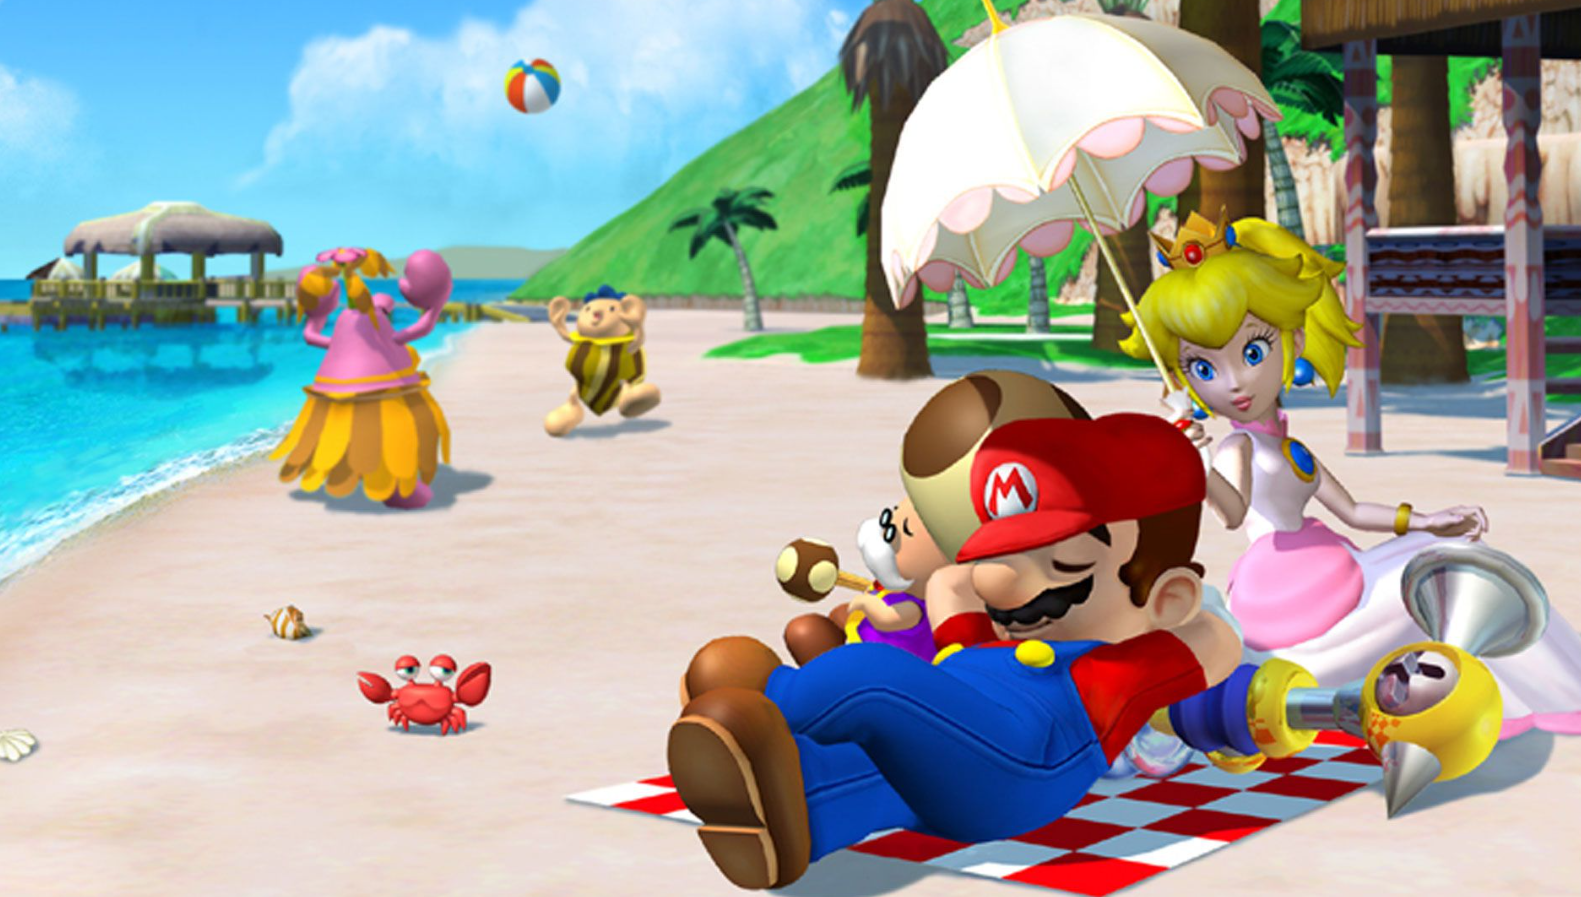 Immagine di Super Mario Sunshine ma in versione GBA è l'incredibile idea di un artista